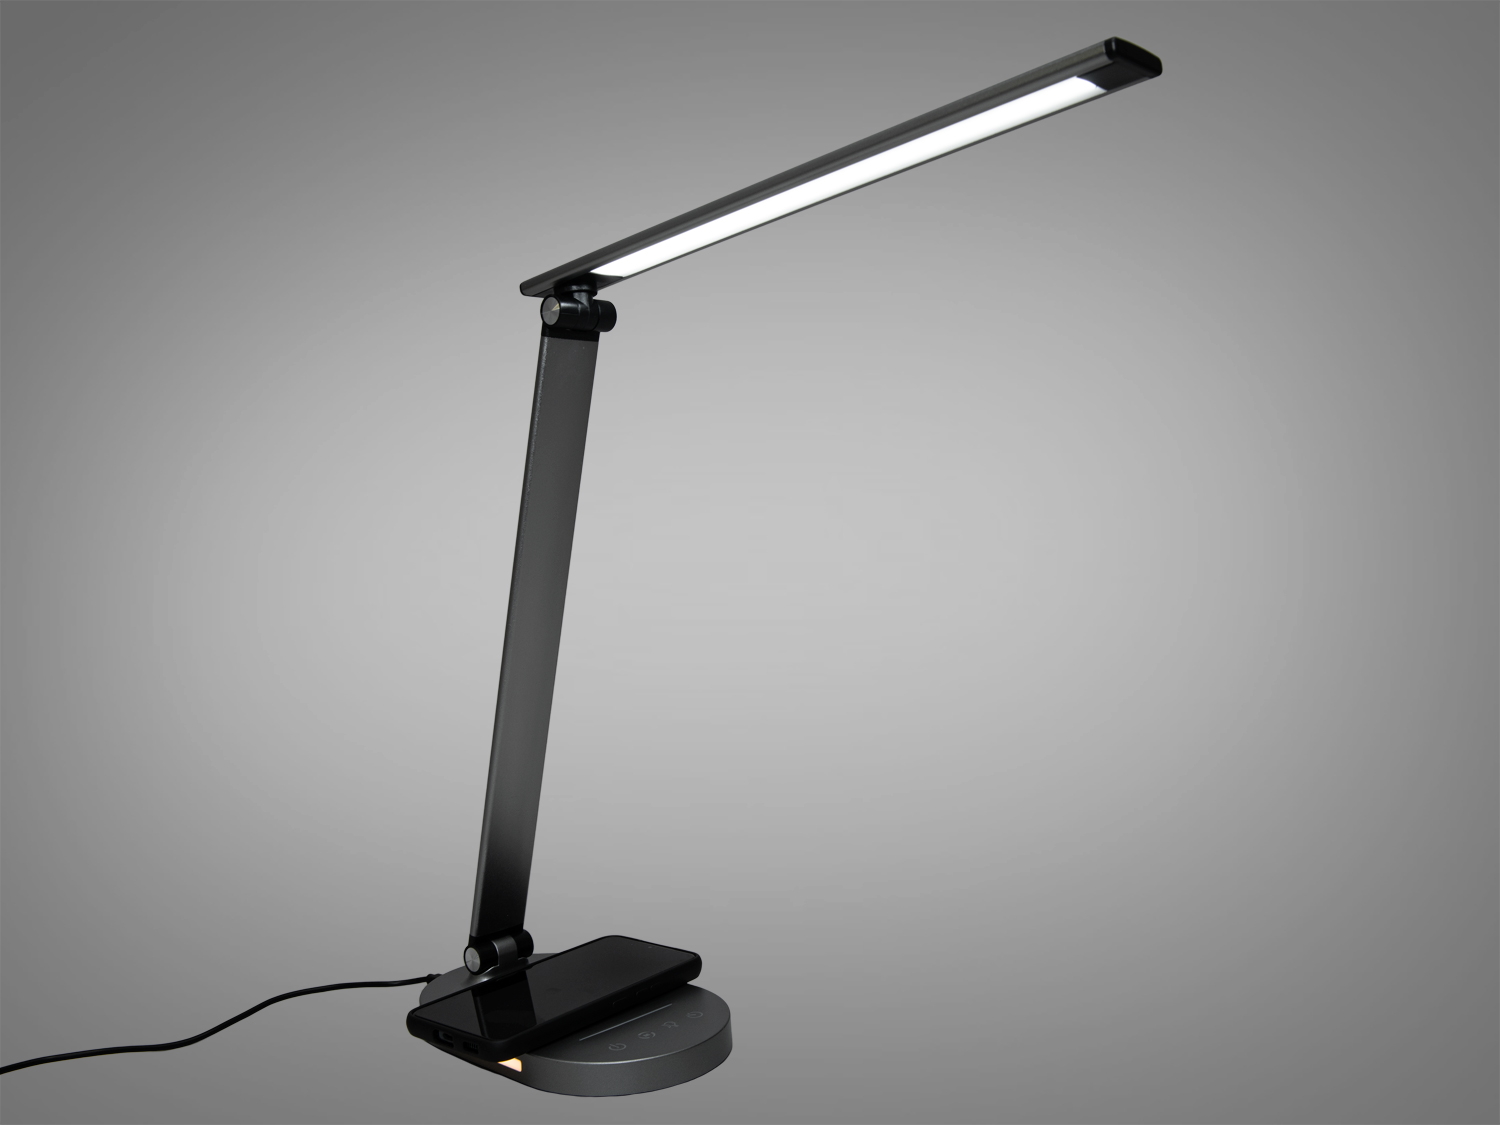 Мінімалістична настільна LED лампа із usb зарядкою, колір сірий, на 6 WНастольные лампы, Светодиодные настольные лампы, Новинки